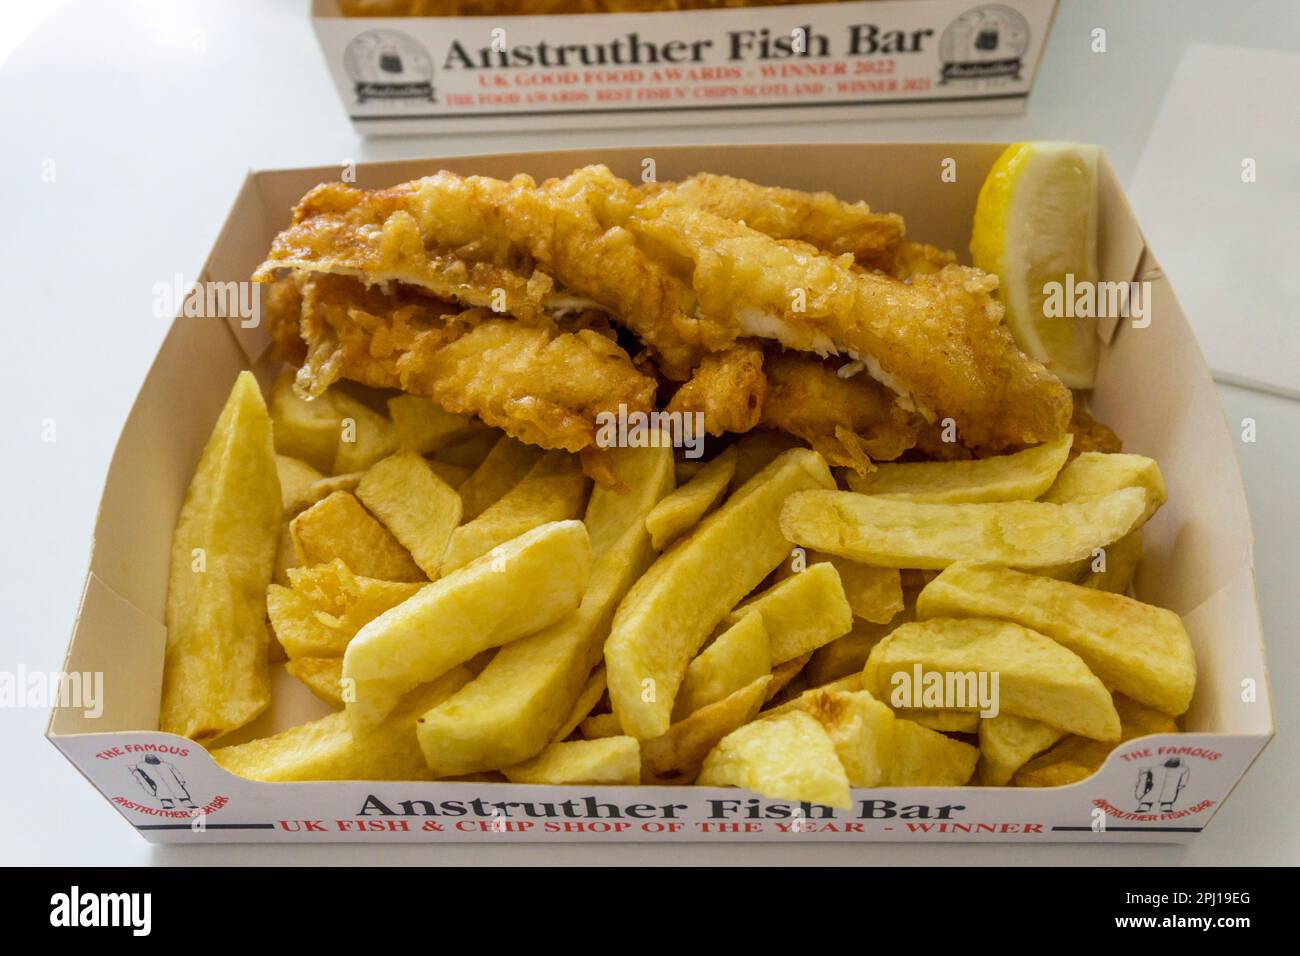 Une portion de poisson et de frites du bar à poissons Anstruther à Fife, en Écosse. Banque D'Images